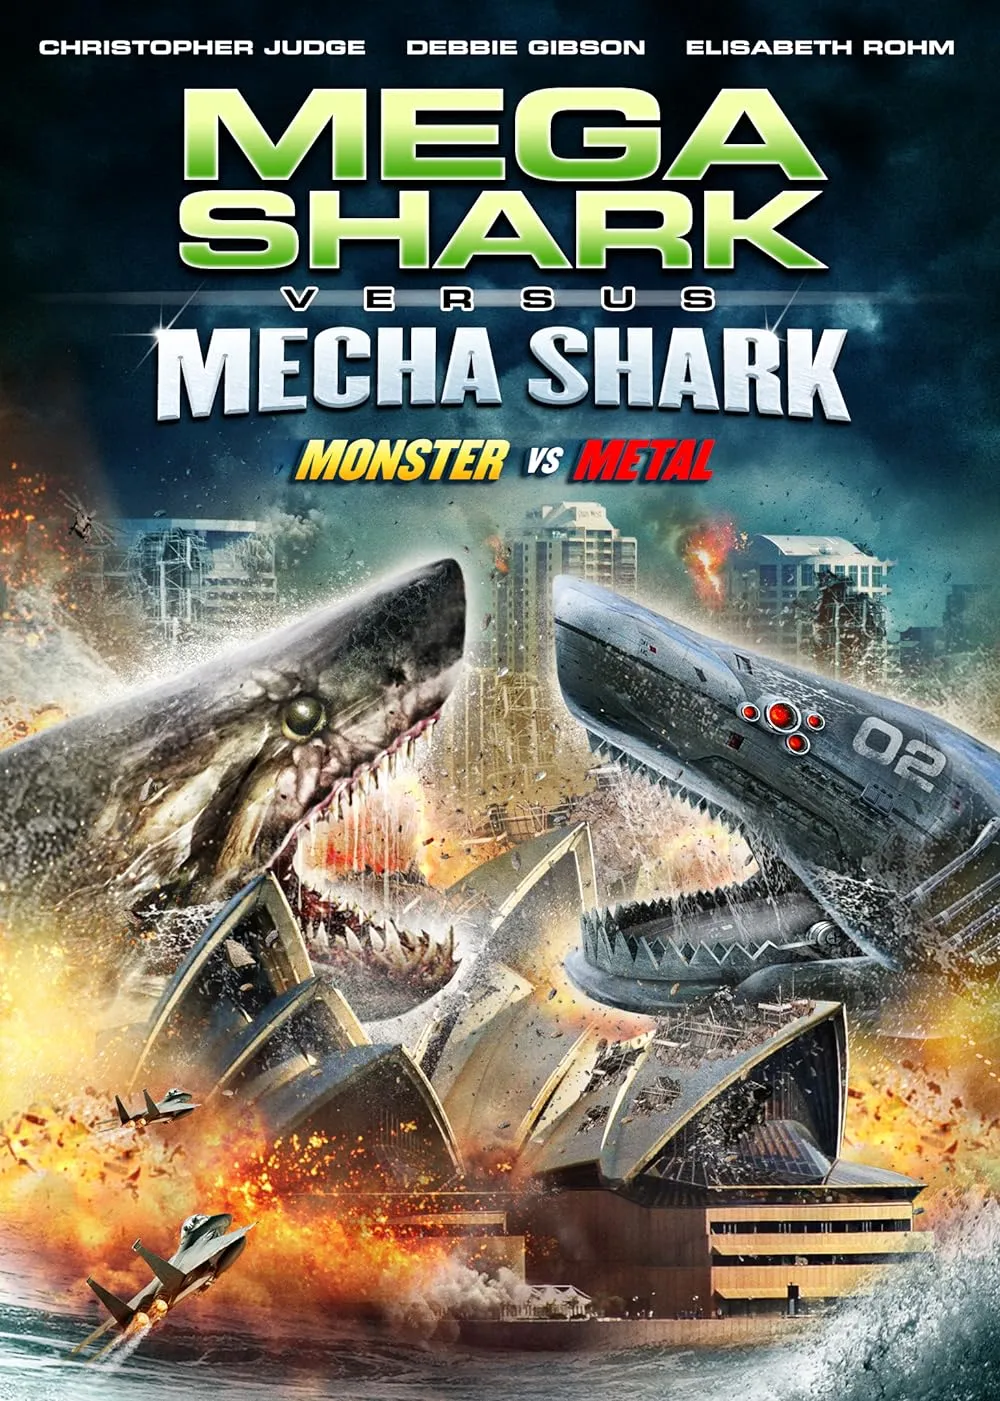 Mega Shark vs. Mecha Shark 2014 Hindi ORG Dual Audio 1080p | 720p | 480p BluRay ESub Download